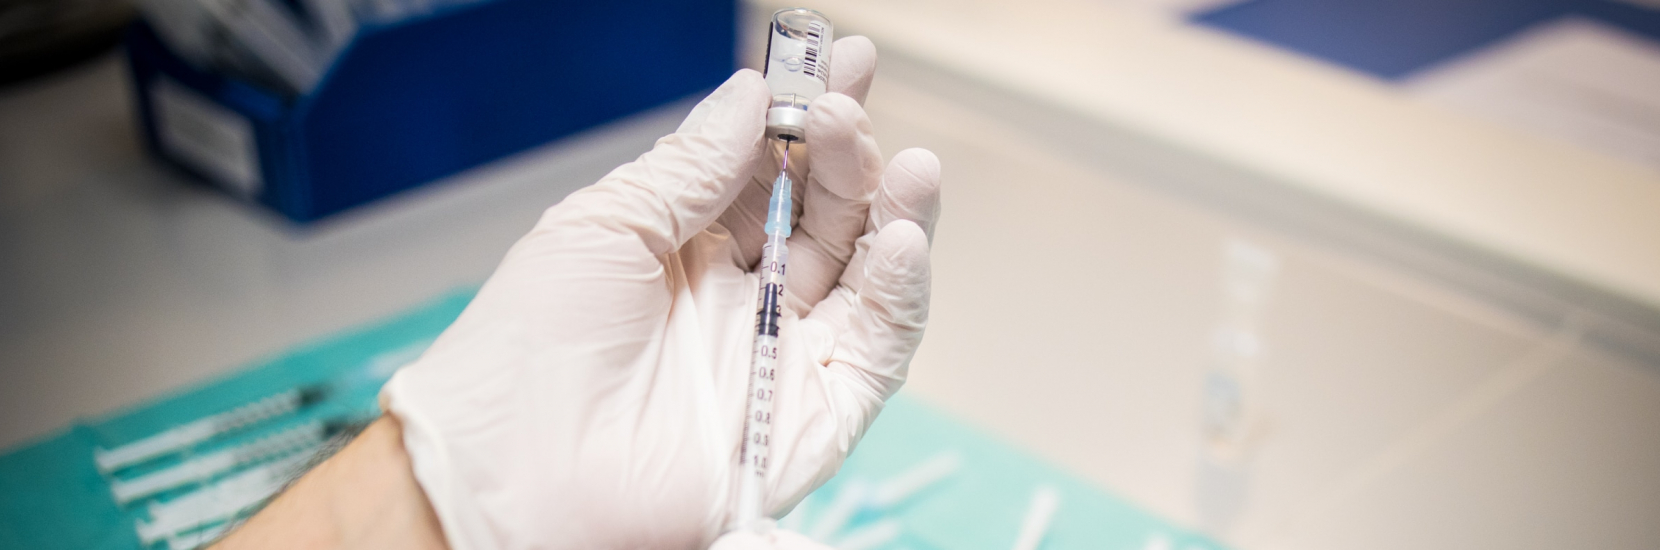 La vaccination contre le coronavirus a débuté ce mardi 12 janvier 2021 au CHL